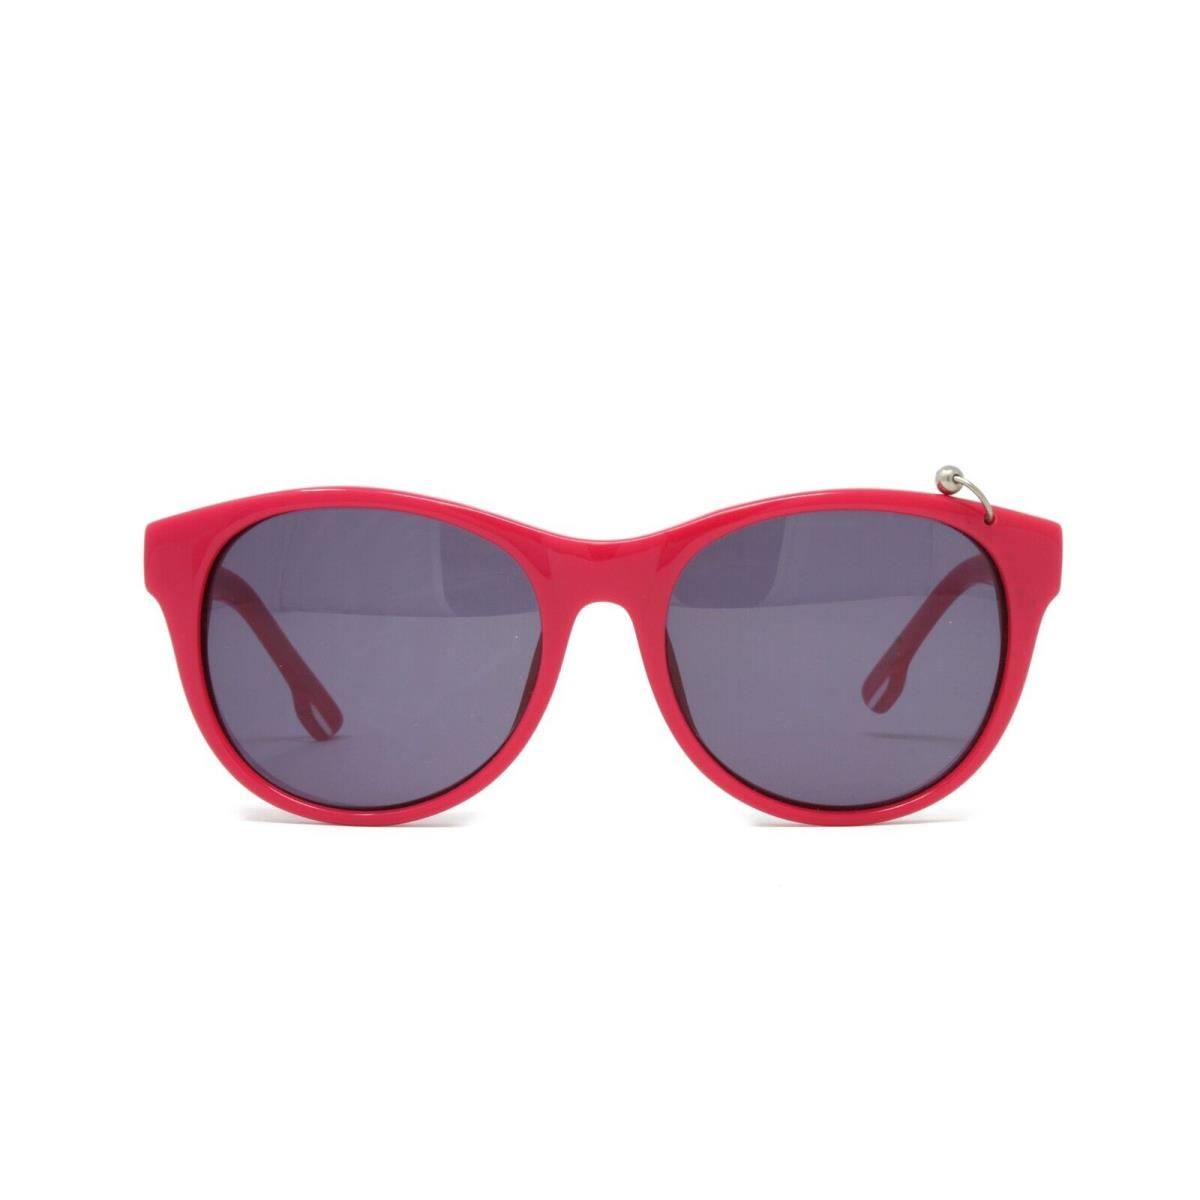 Diesel sunglasses  - Pink Frame, Gray Lens 0